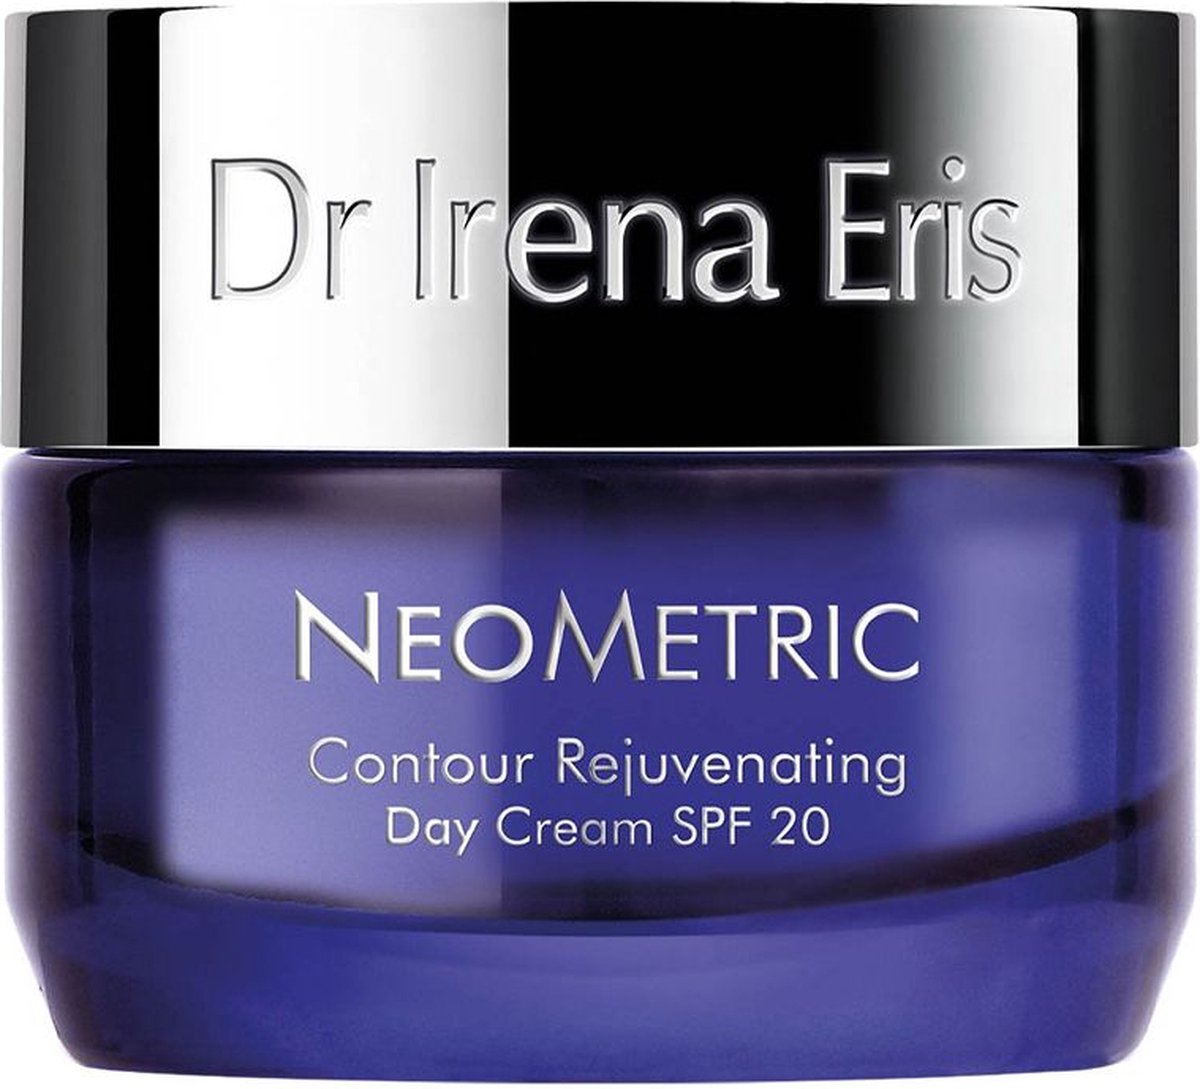 Dr. Irena Eris Contour Rejuvenating Day Cream Spf 20 50 Ml